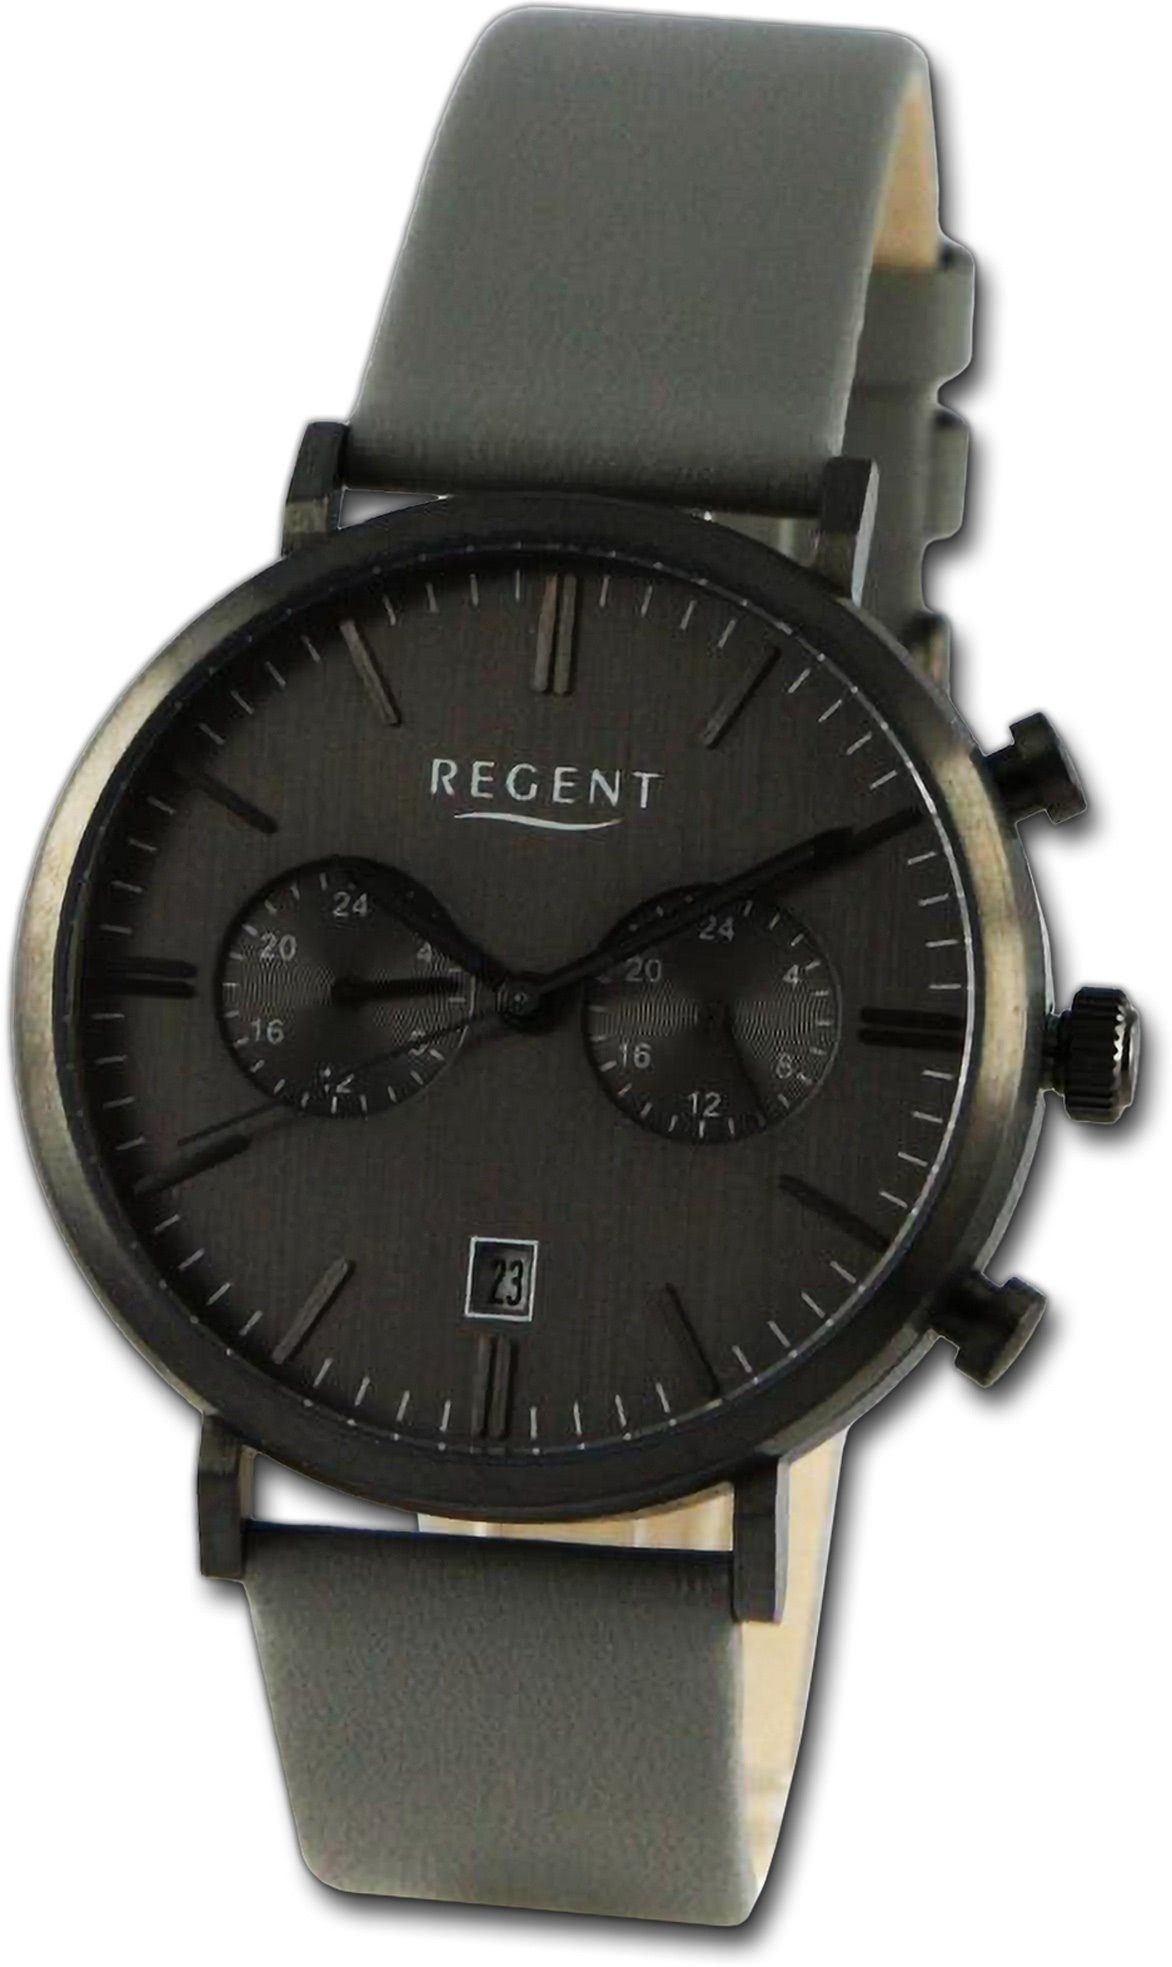 Gehäuse, Armbanduhr Lederarmband rundes Analog, dunkelgrau, Herren (ca. Herrenuhr groß 41mm) Quarzuhr Regent Regent